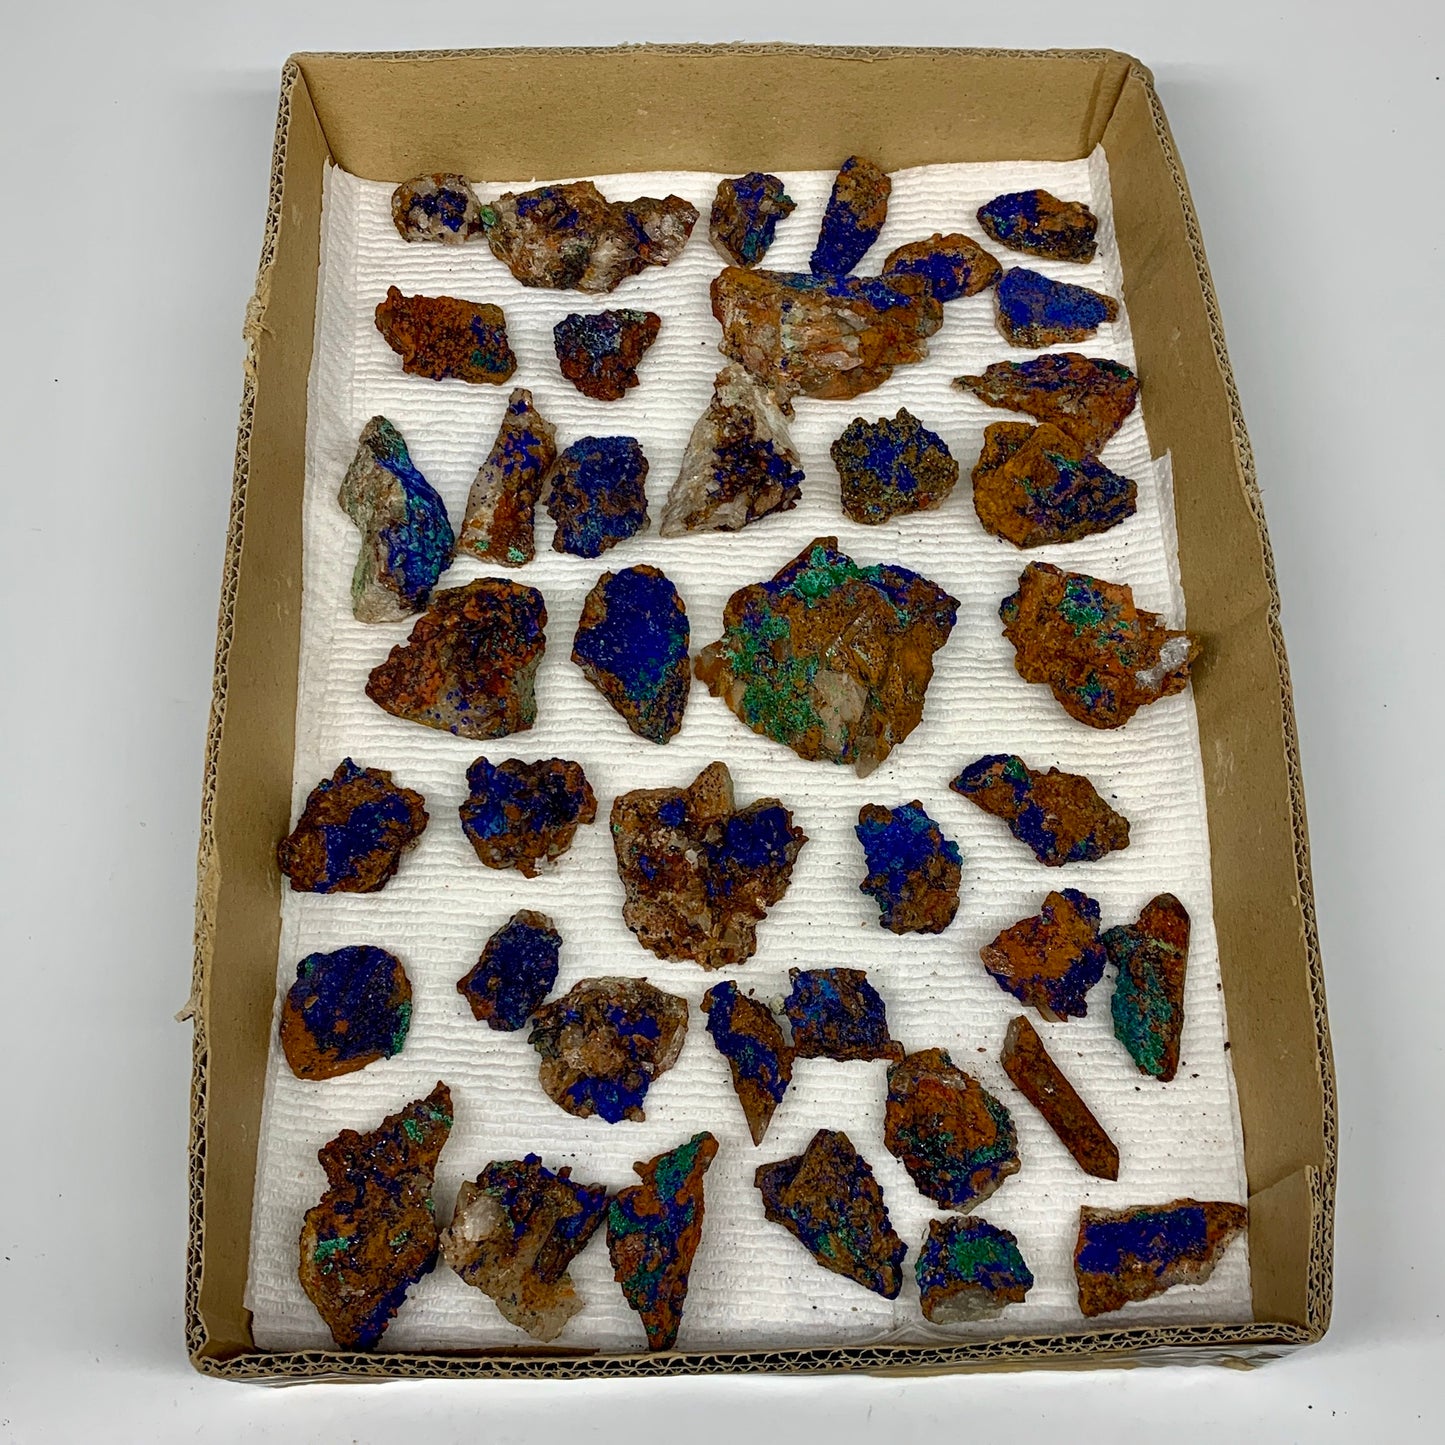 900g, 1"-2.6", Small Pieces Rough Azurite Malachite Mineral Specimen, B10948